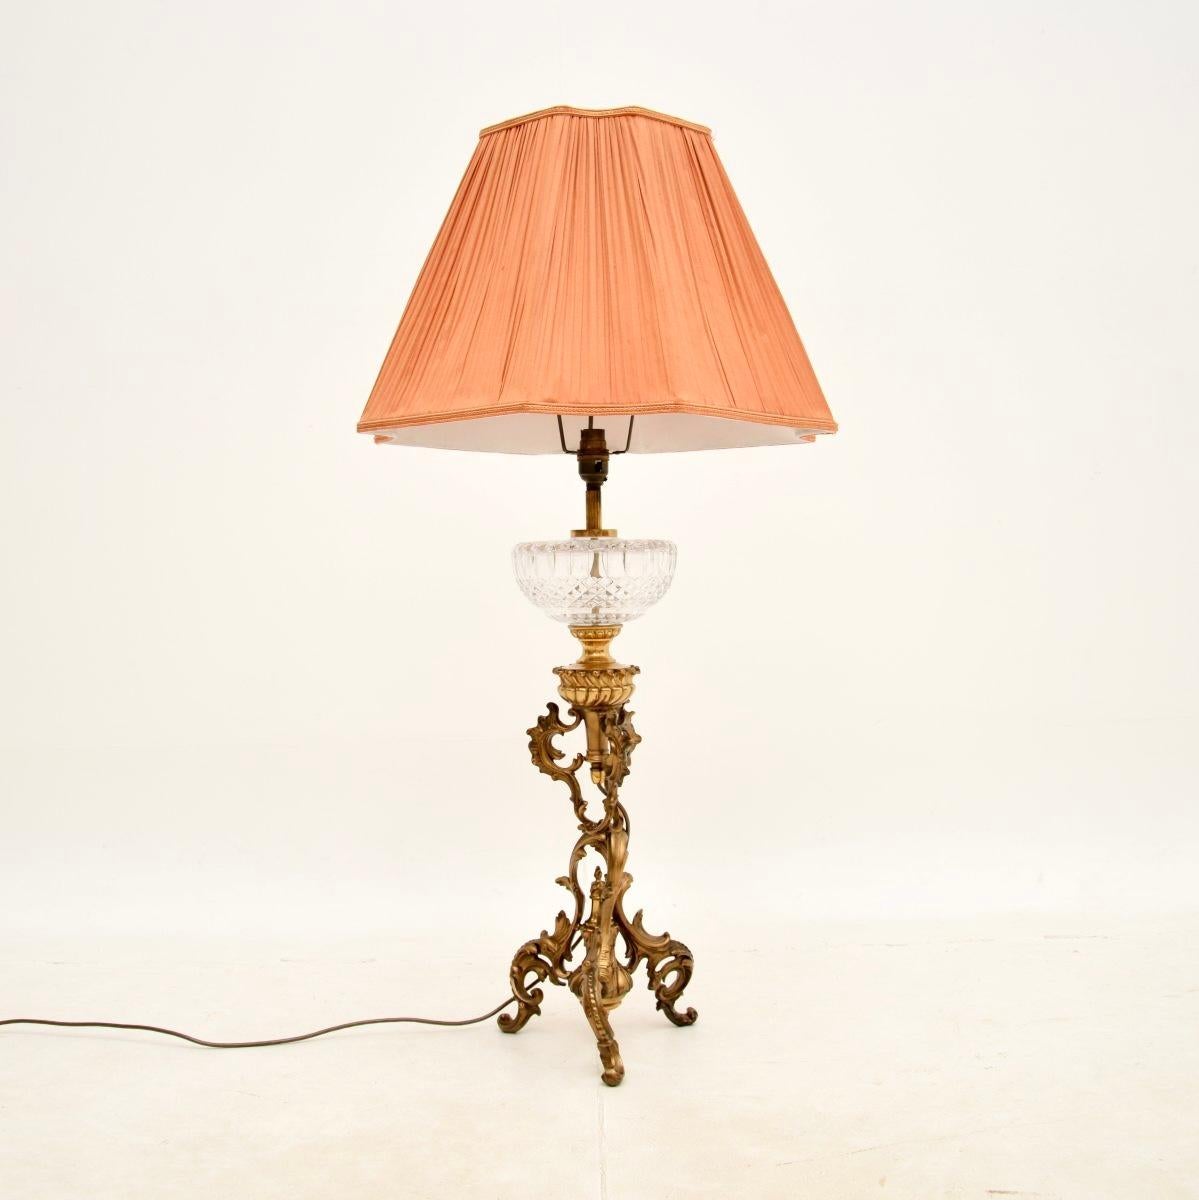 Une lampe de table en bronze doré et en verre de cristal absolument magnifique. Il a été fabriqué en France et date de la période 1900-10.

La qualité est exceptionnelle, le produit est grand et impressionnant, mesurant près d'un mètre de haut avec